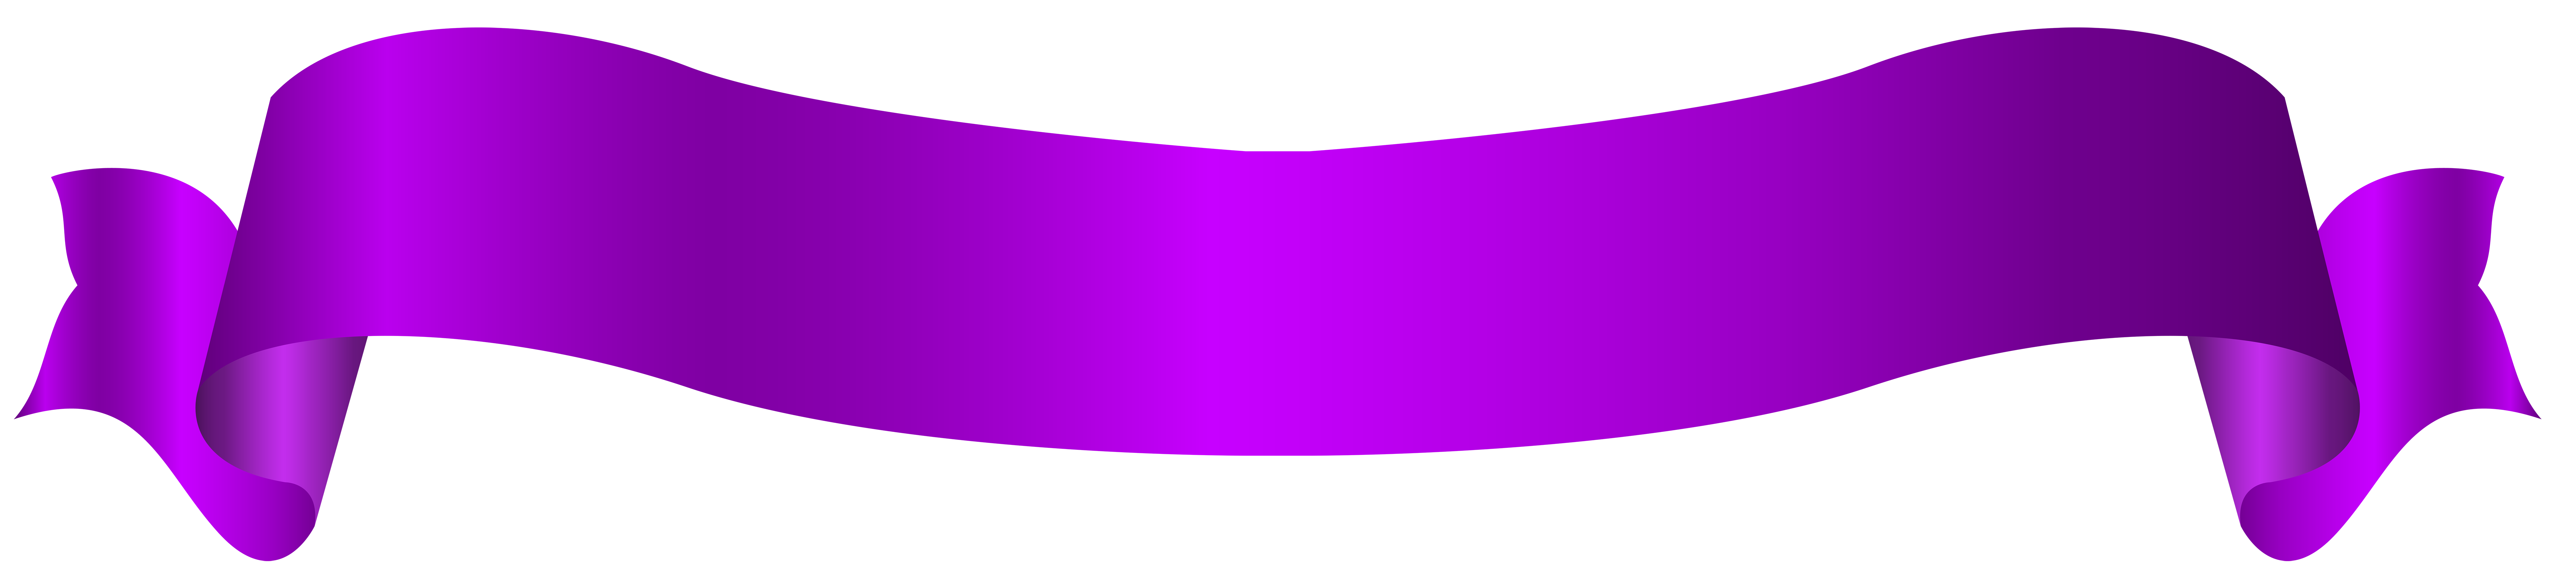 Violet banner PNG Beeld